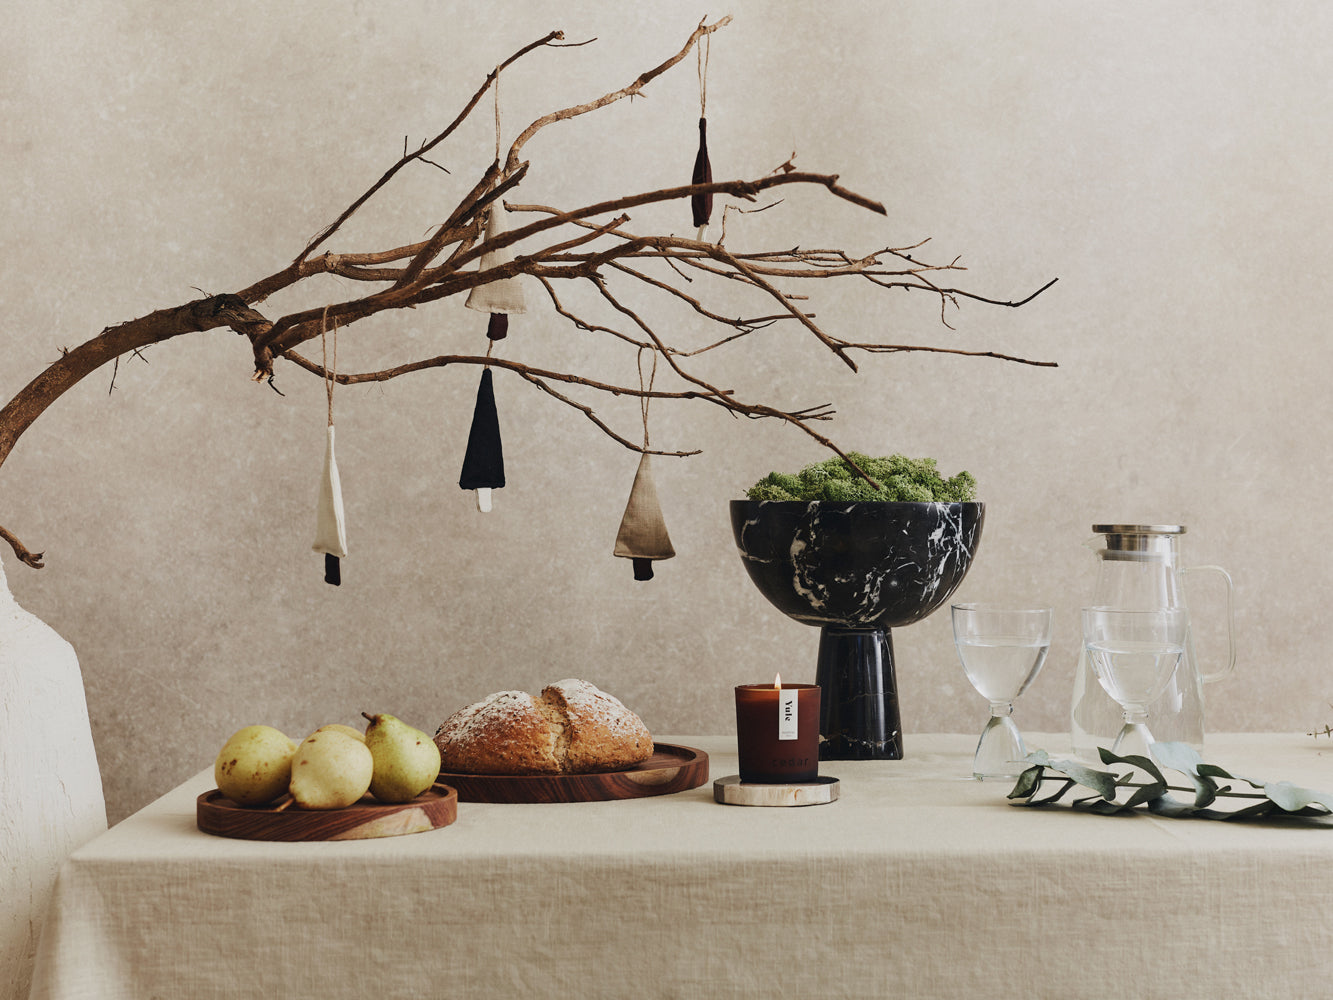 Linen Festive Tree Decoration | Espresso and Ecru